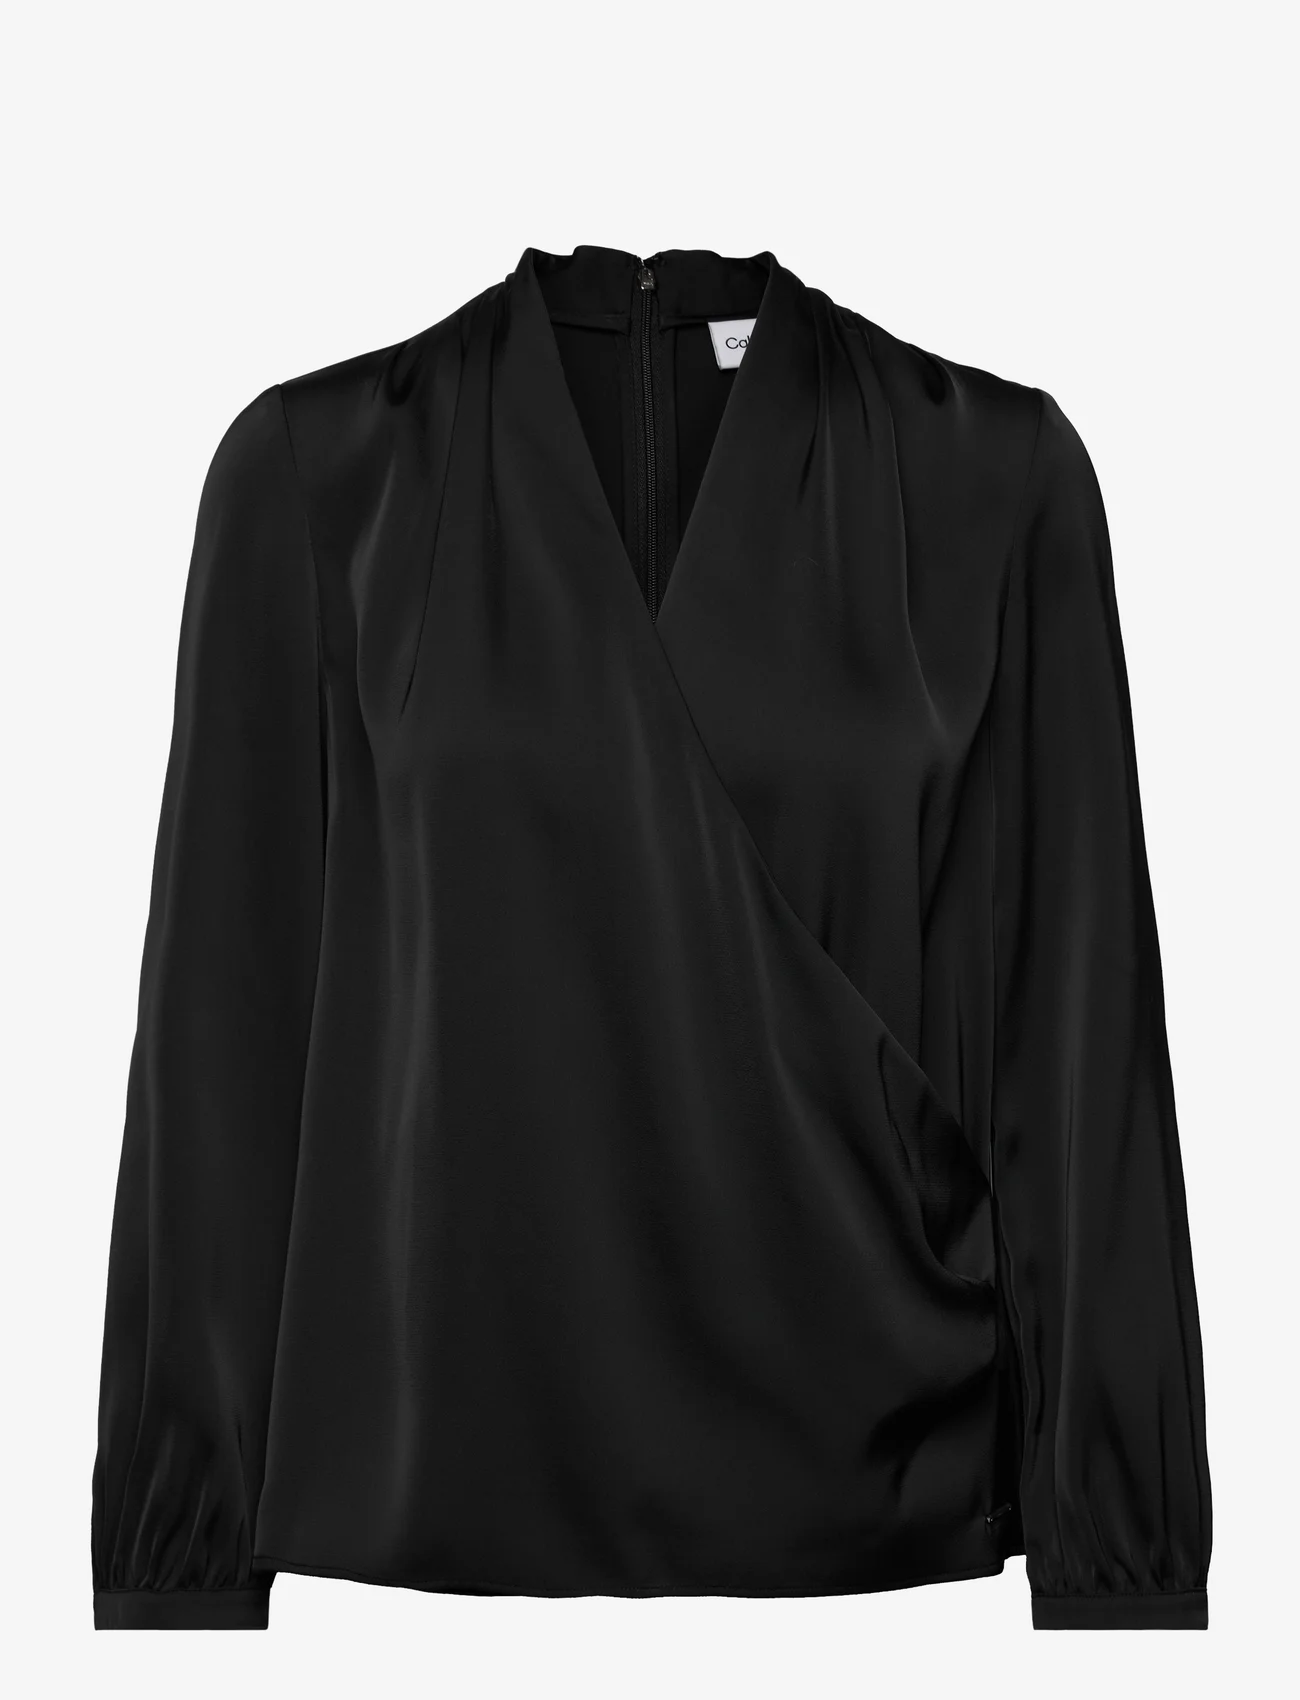 Calvin Klein - SATIN SHINE LS V NECK BLOUSE - long-sleeved blouses - ck black - 0